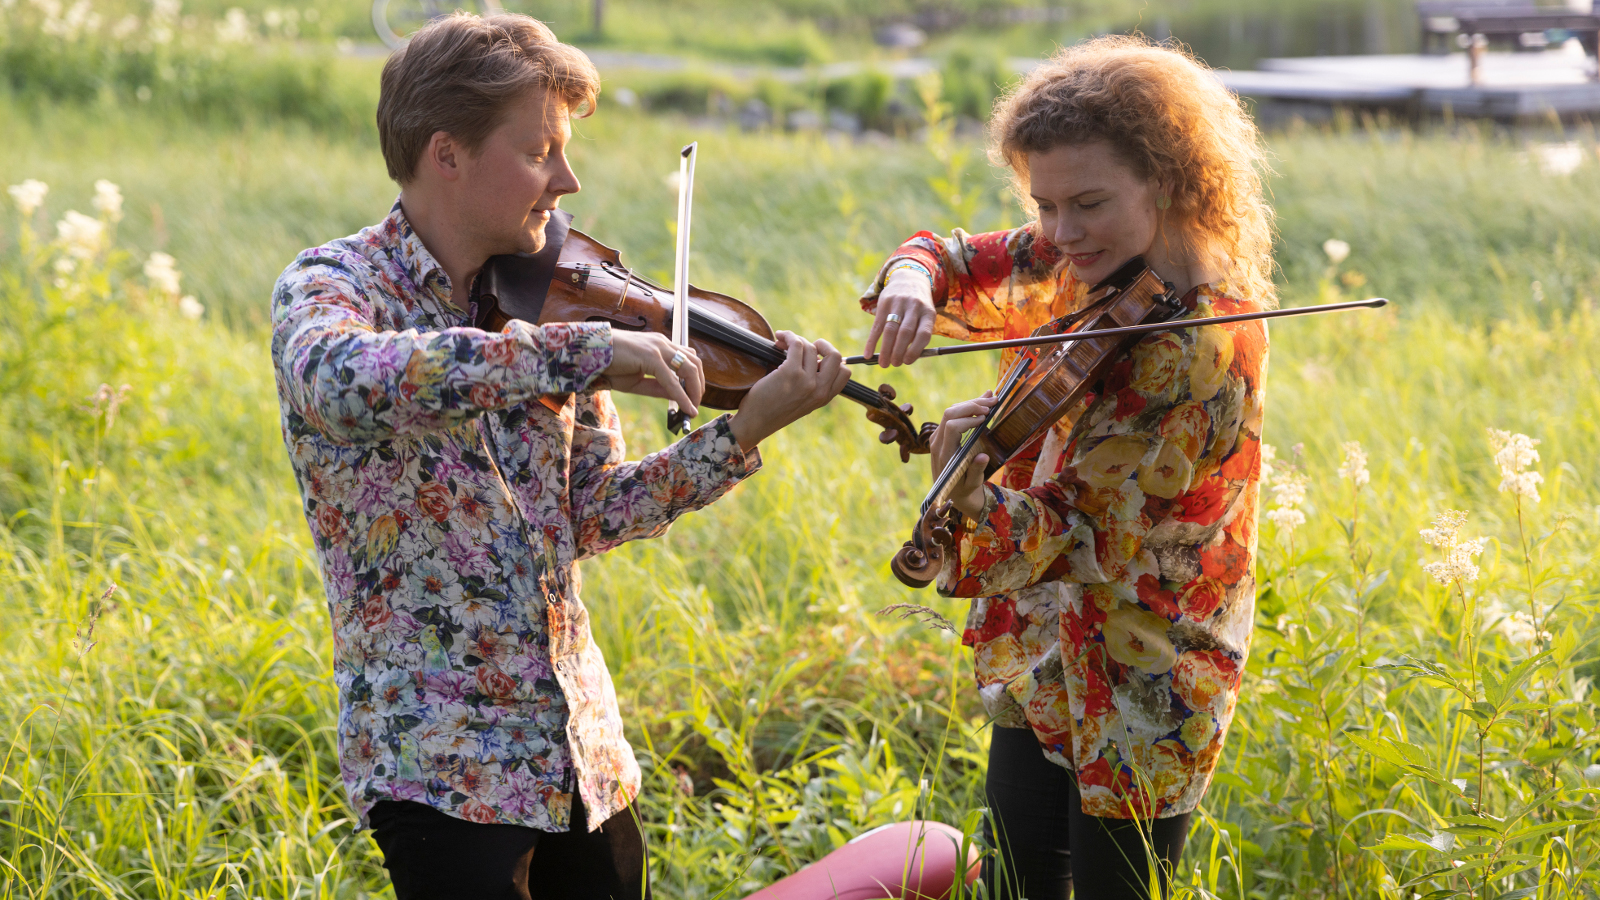 Kuvassa ovat Kuhmon Kamarimusiikin taiteelliset johtajat Antti Tikkanen ja Minna Pensola sivuttain soittamassa viulua.  He ovat keskellä heinikkoa vehreän kesäisessä maisemassa.